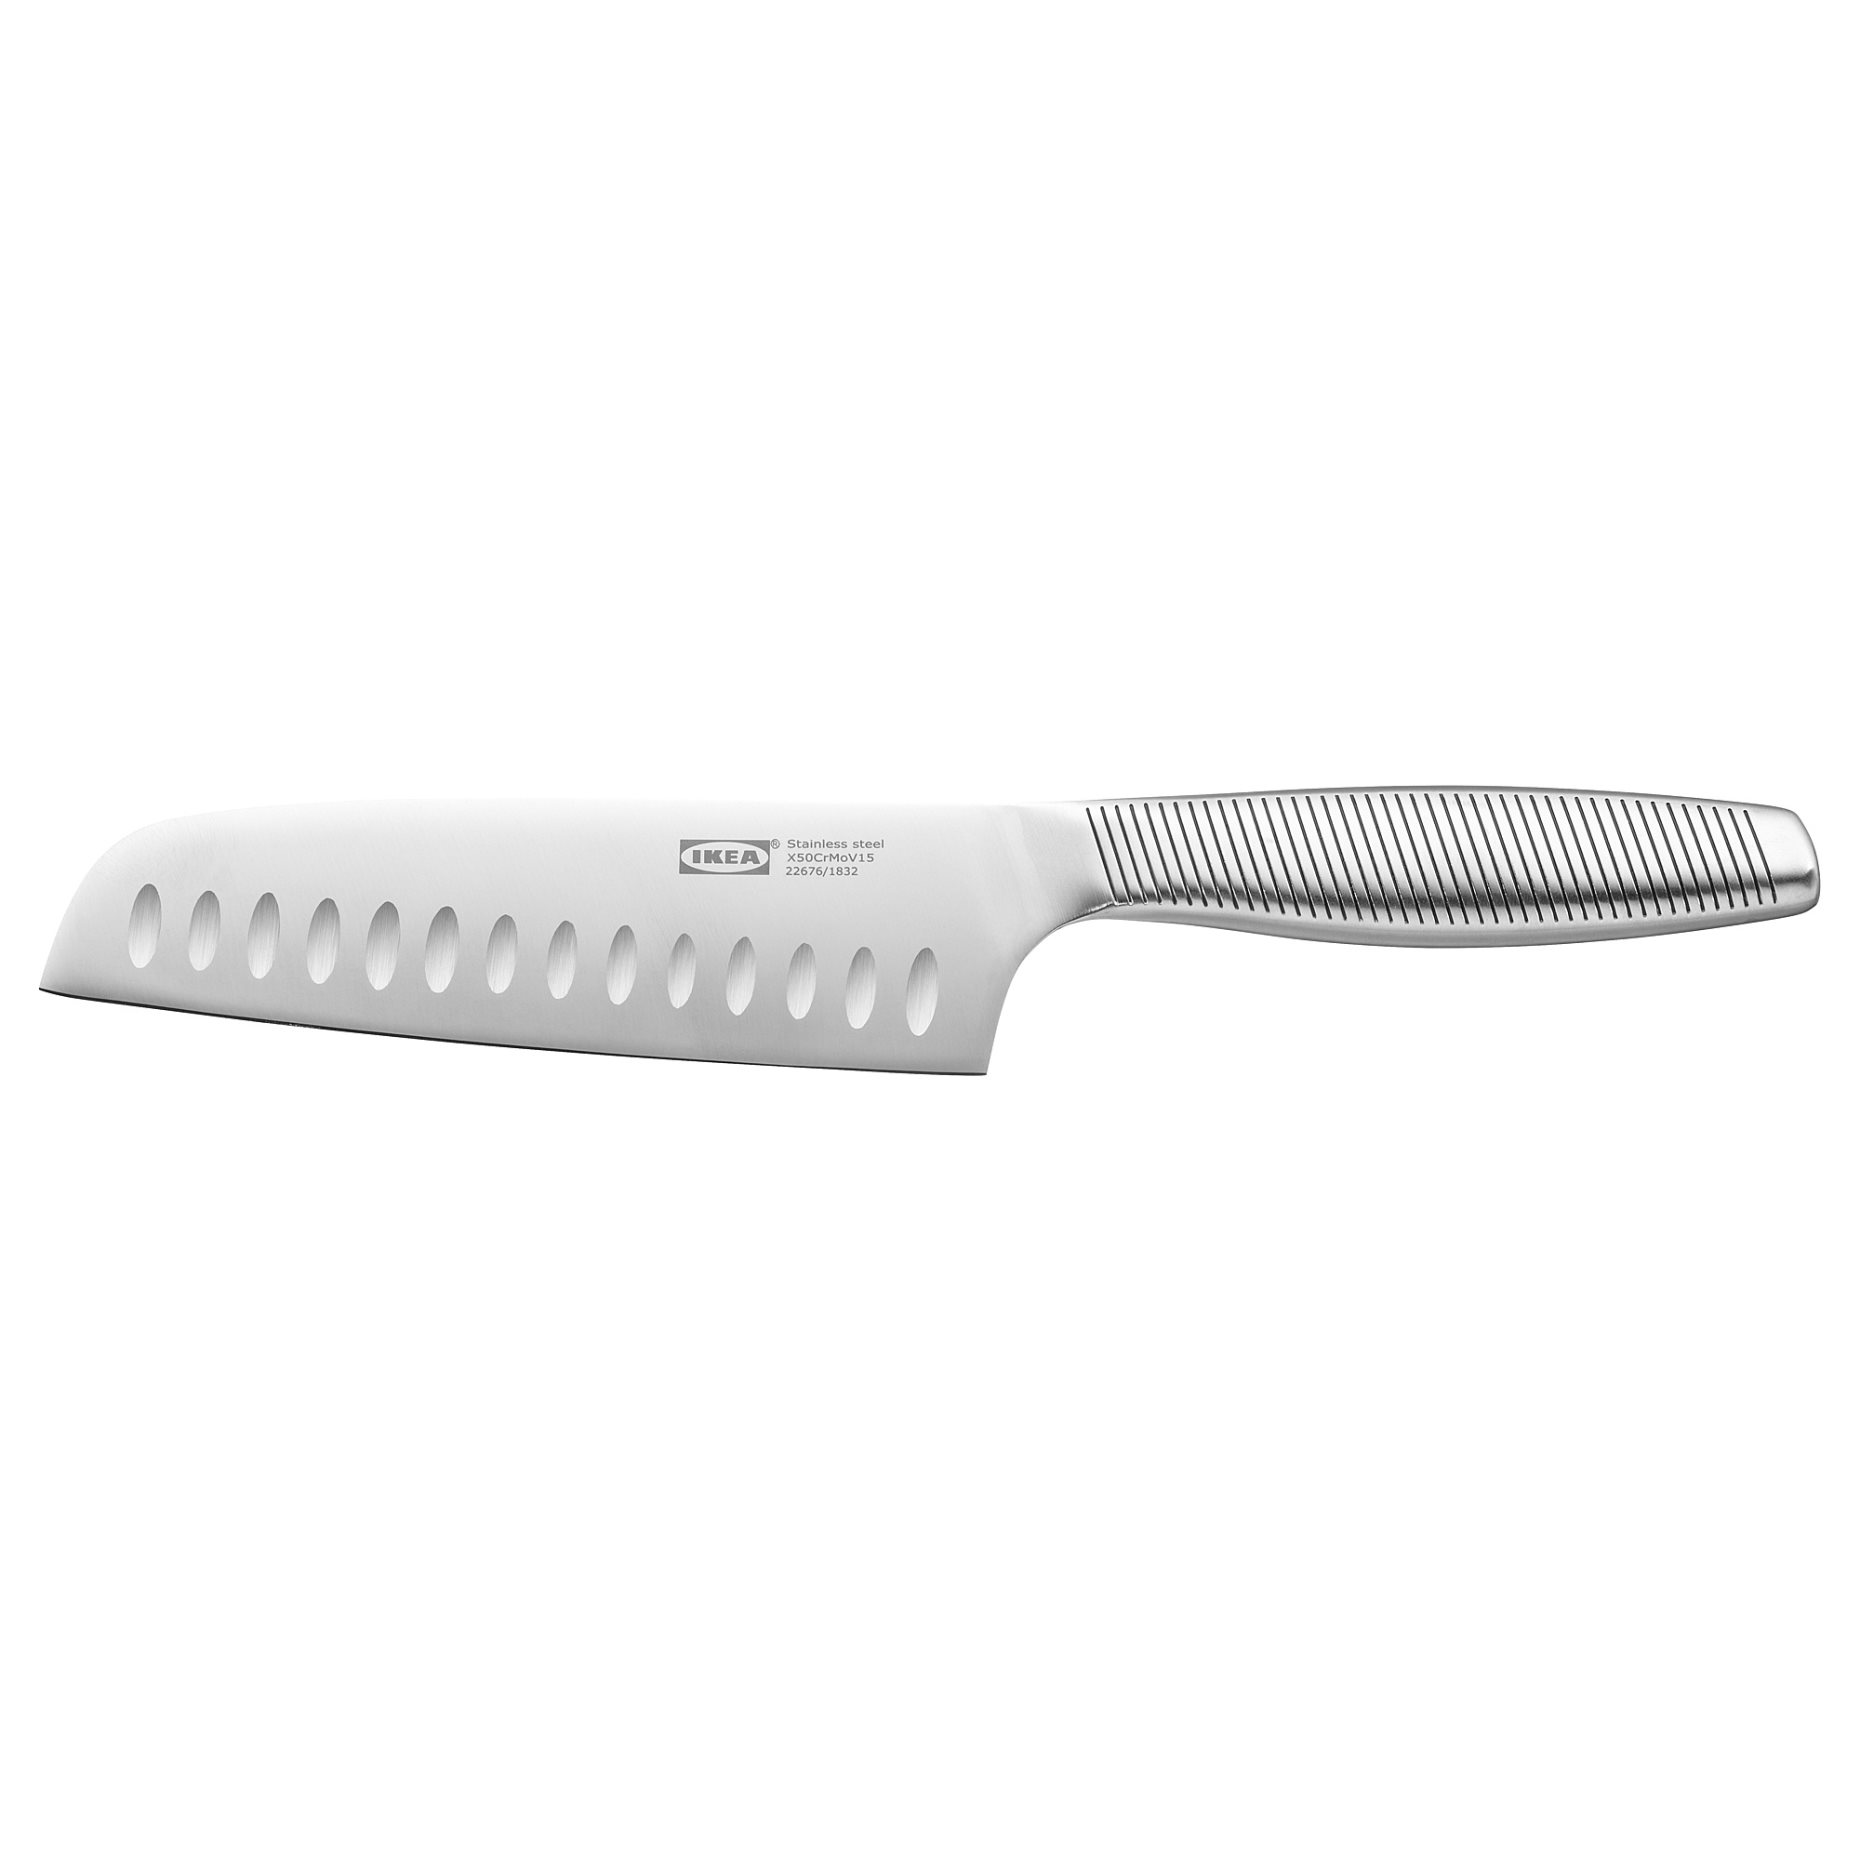 IKEA 365+, vegetable knife, 702.879.37